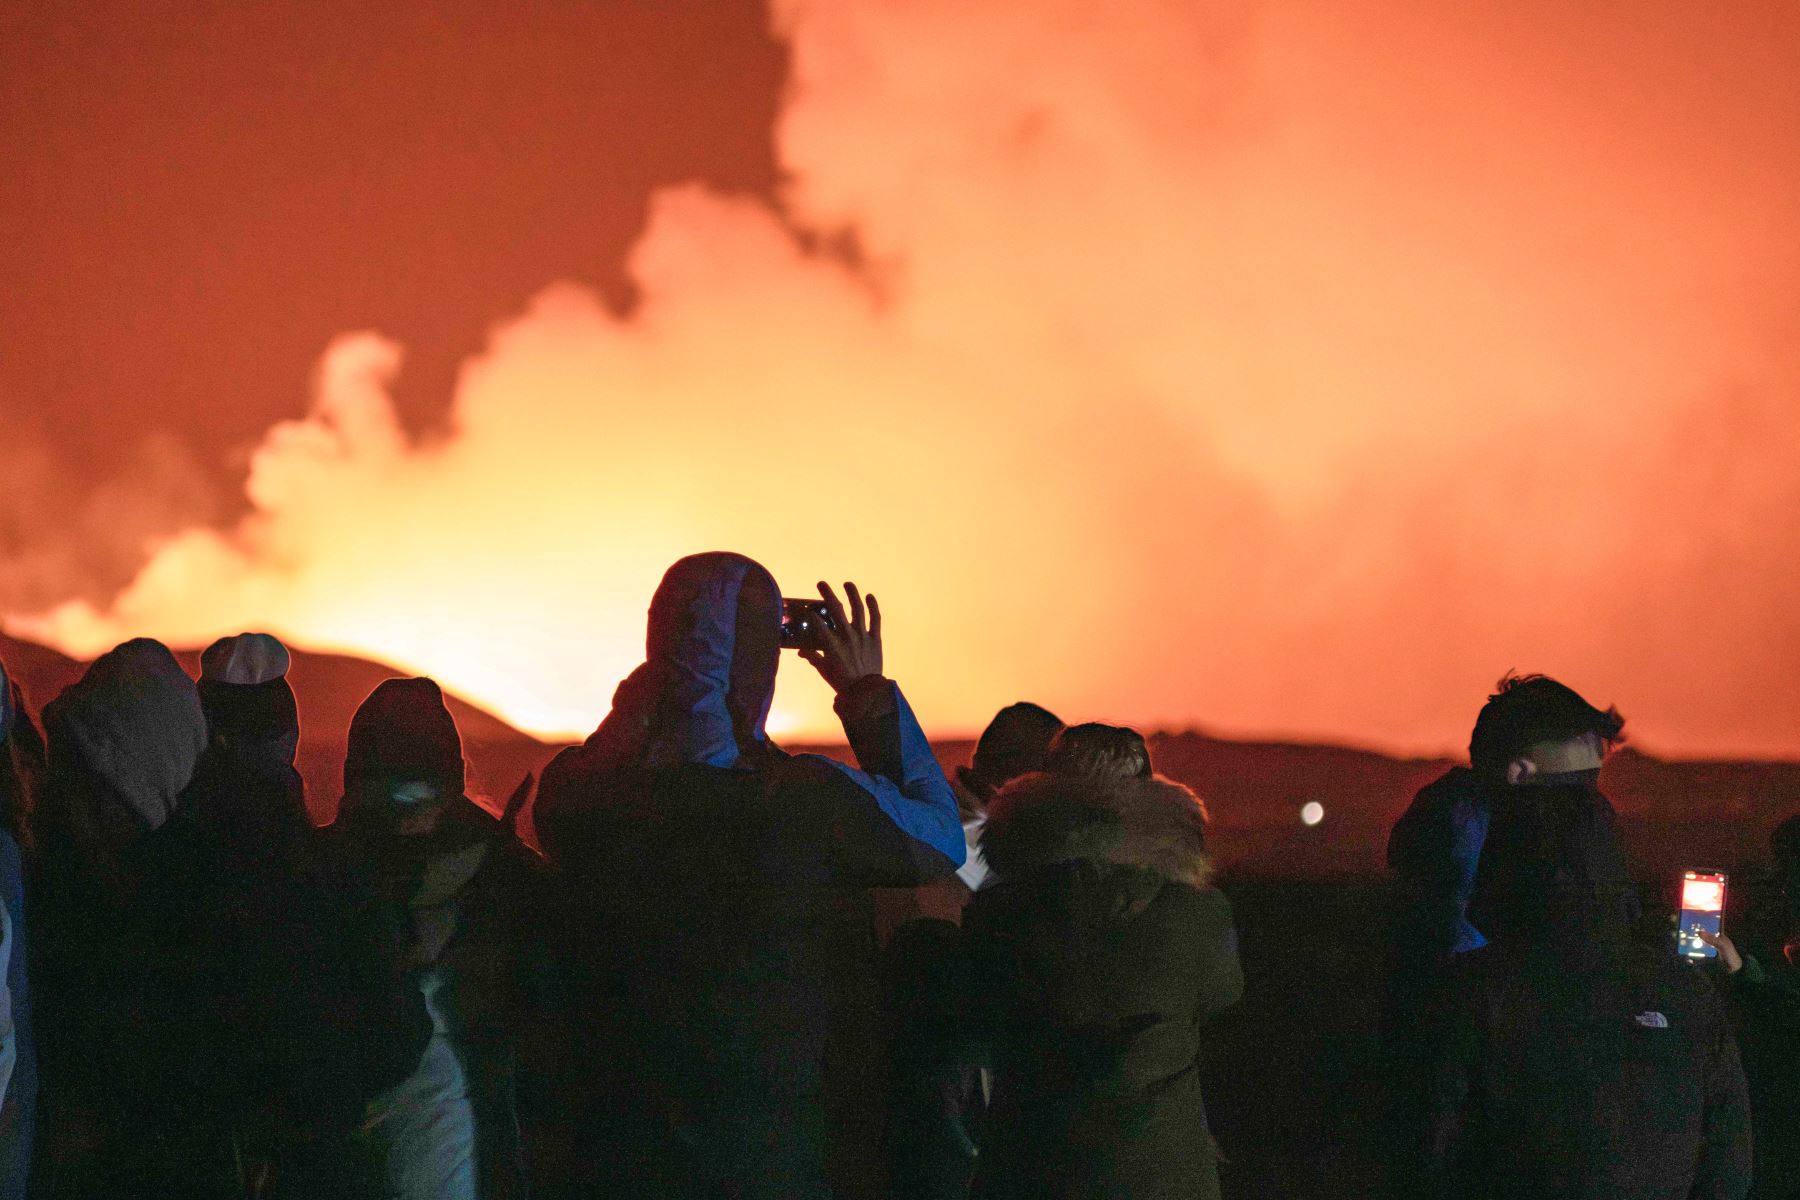 La gente se reúne para observar cómo la lava fundida fluye desde una fisura en la península de Reykjanes, al norte de la ciudad evacuada de Grindavik, en el oeste de Islandia. Lava arrojada el sábado desde una nueva fisura volcánica en la península de Reykjanes en Islandia, la cuarta erupción en afectar el área desde diciembre, dijeron las autoridades. Foto: AFP